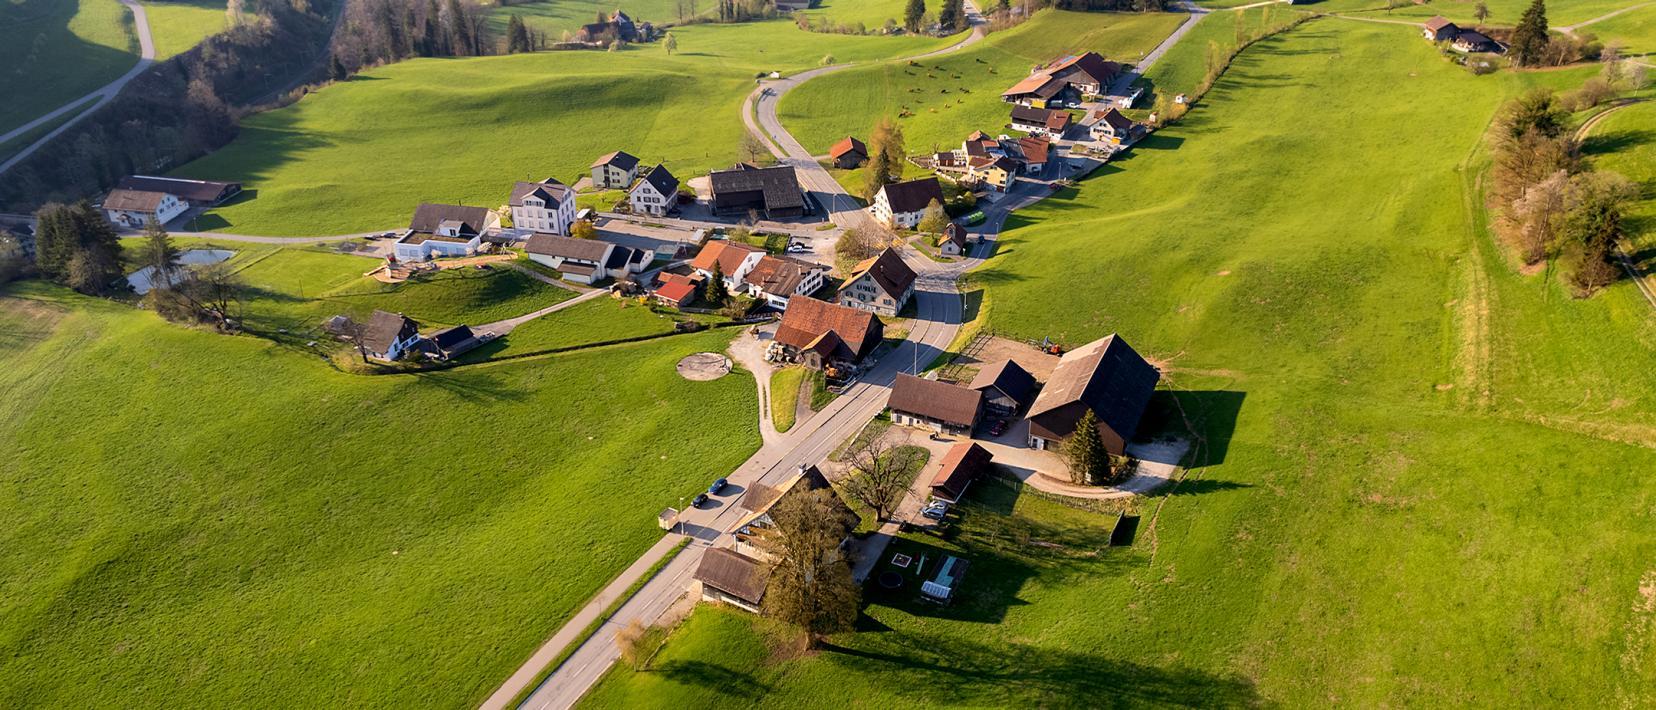 Luftbild der Kleinsiedlung Ried bei Gibswil inmitten von grünen Wiesen.